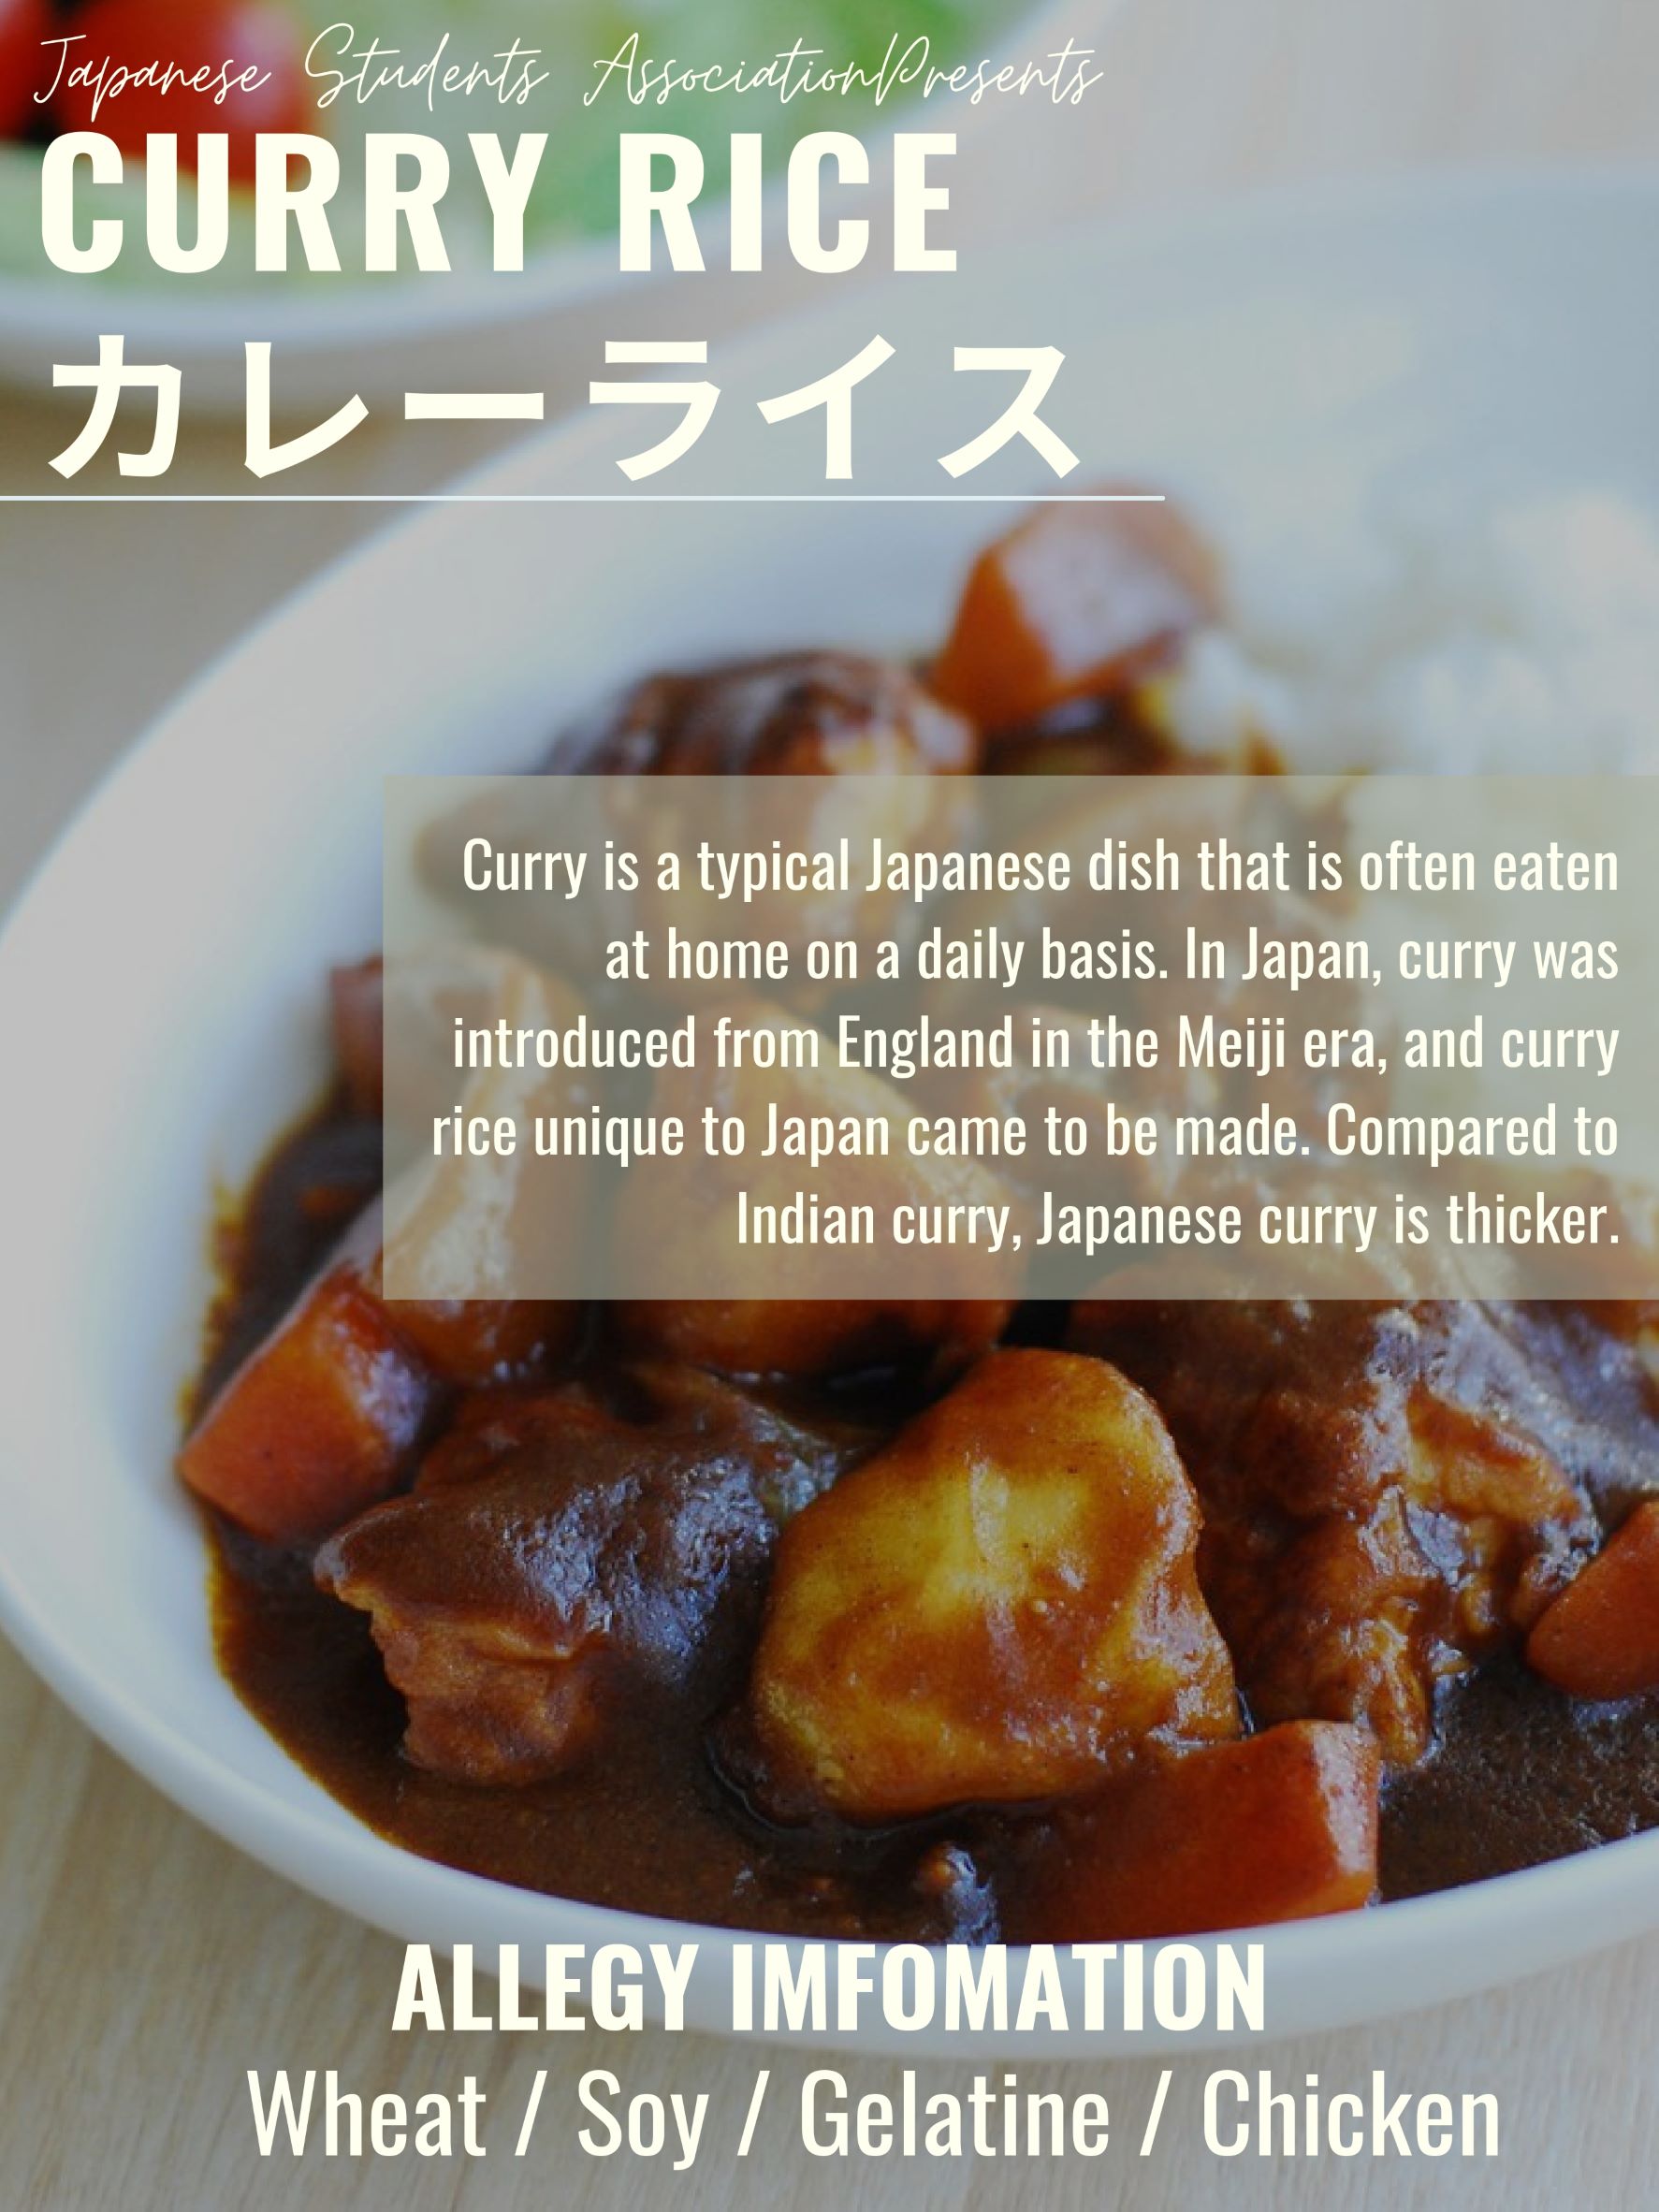 Curry Description